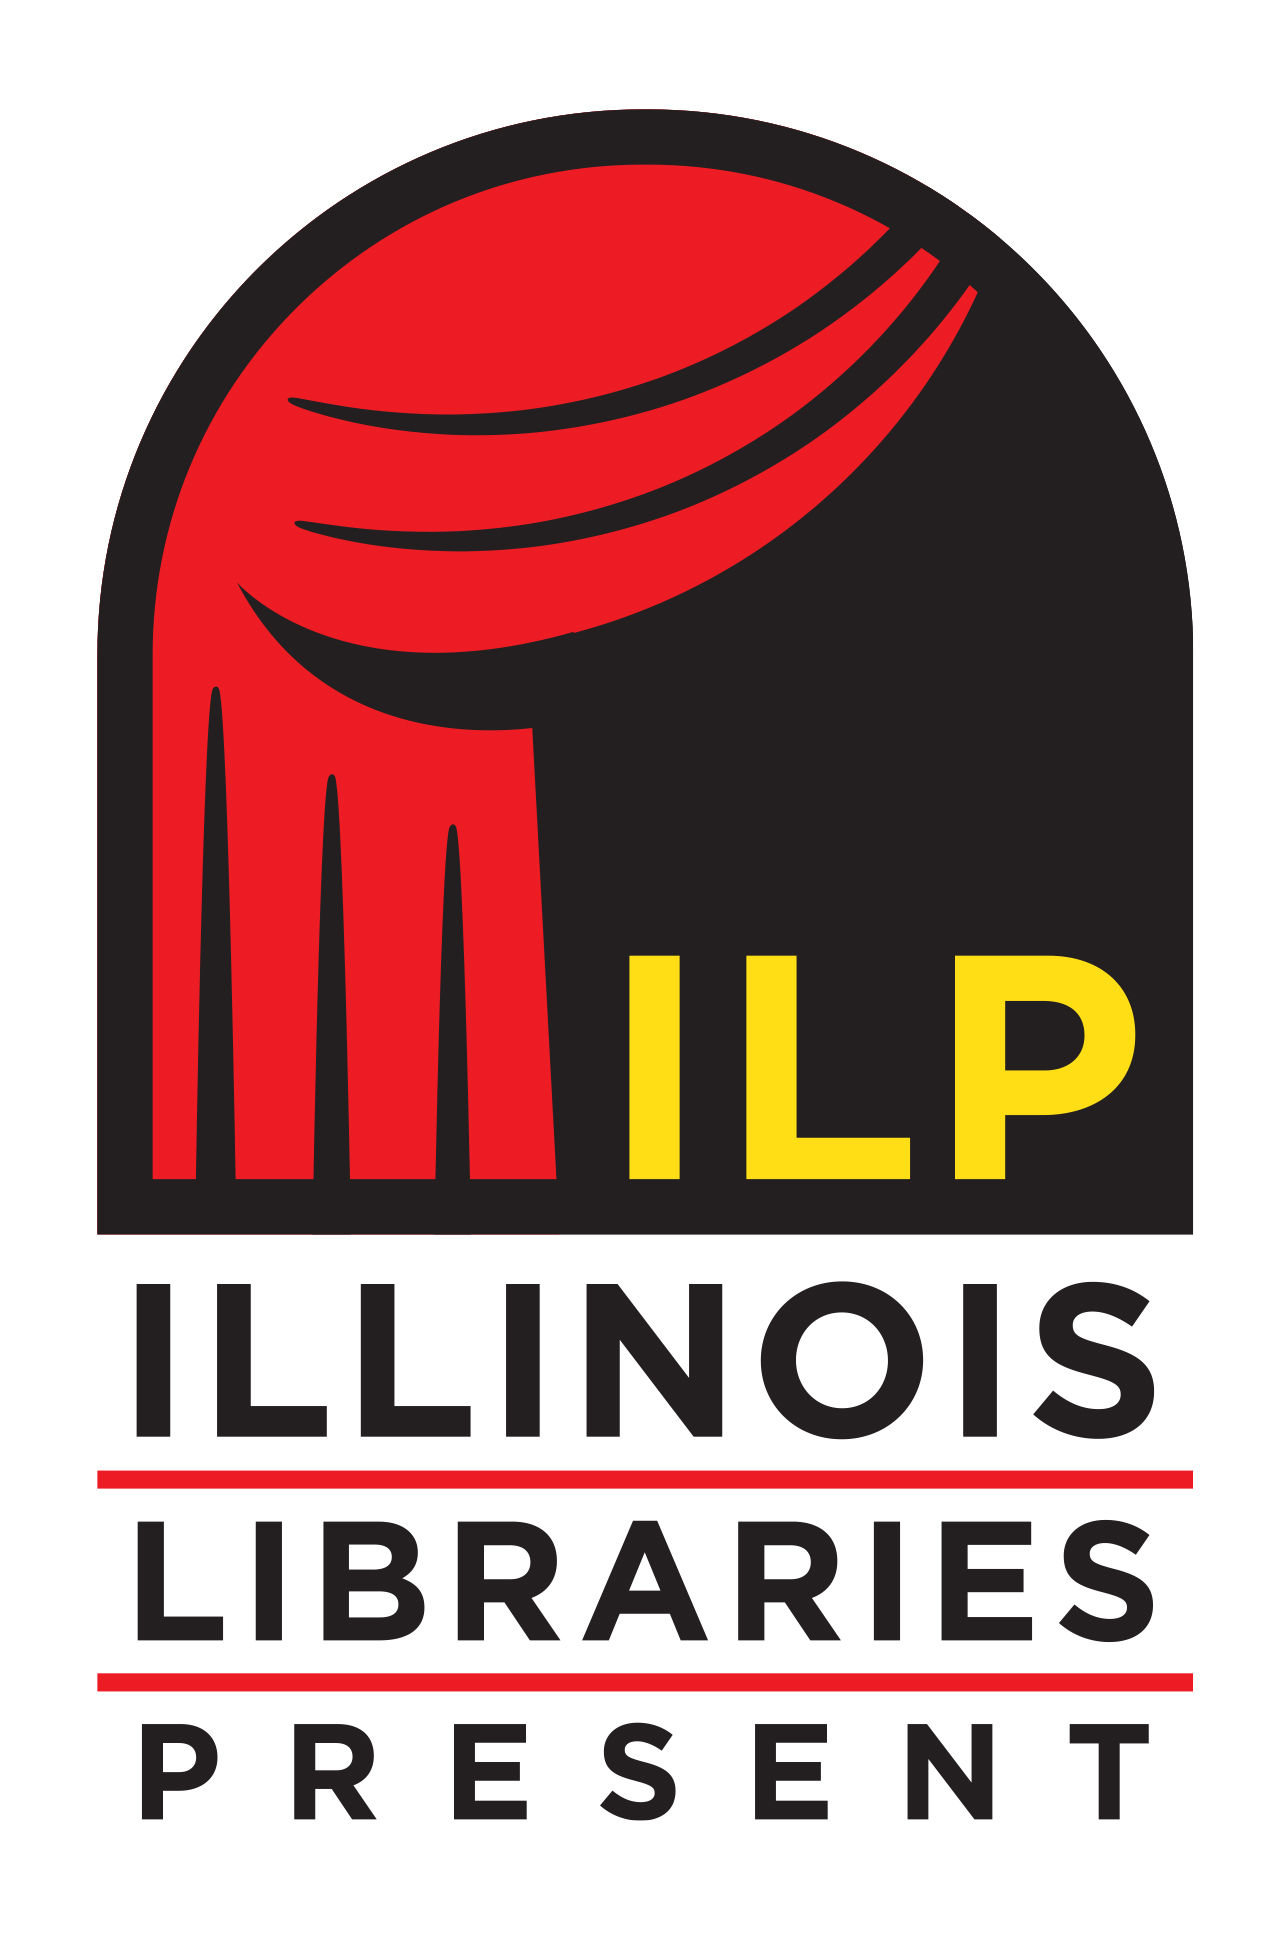 Illinois Libraries Present logo